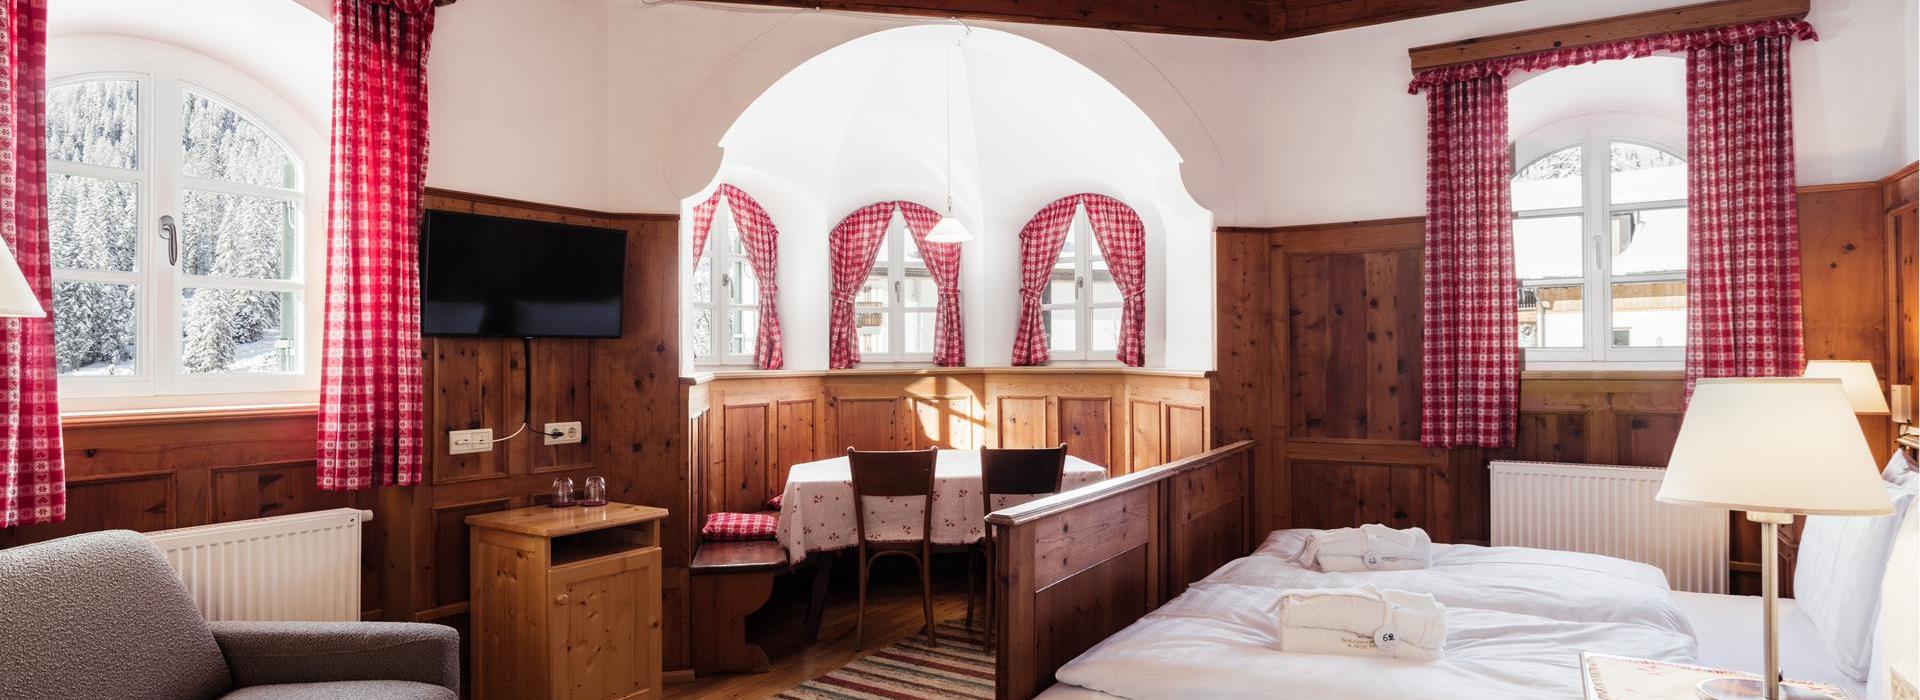 Romantikzimmer Chalet mit Doppelbett, Wohnbereich und Erker